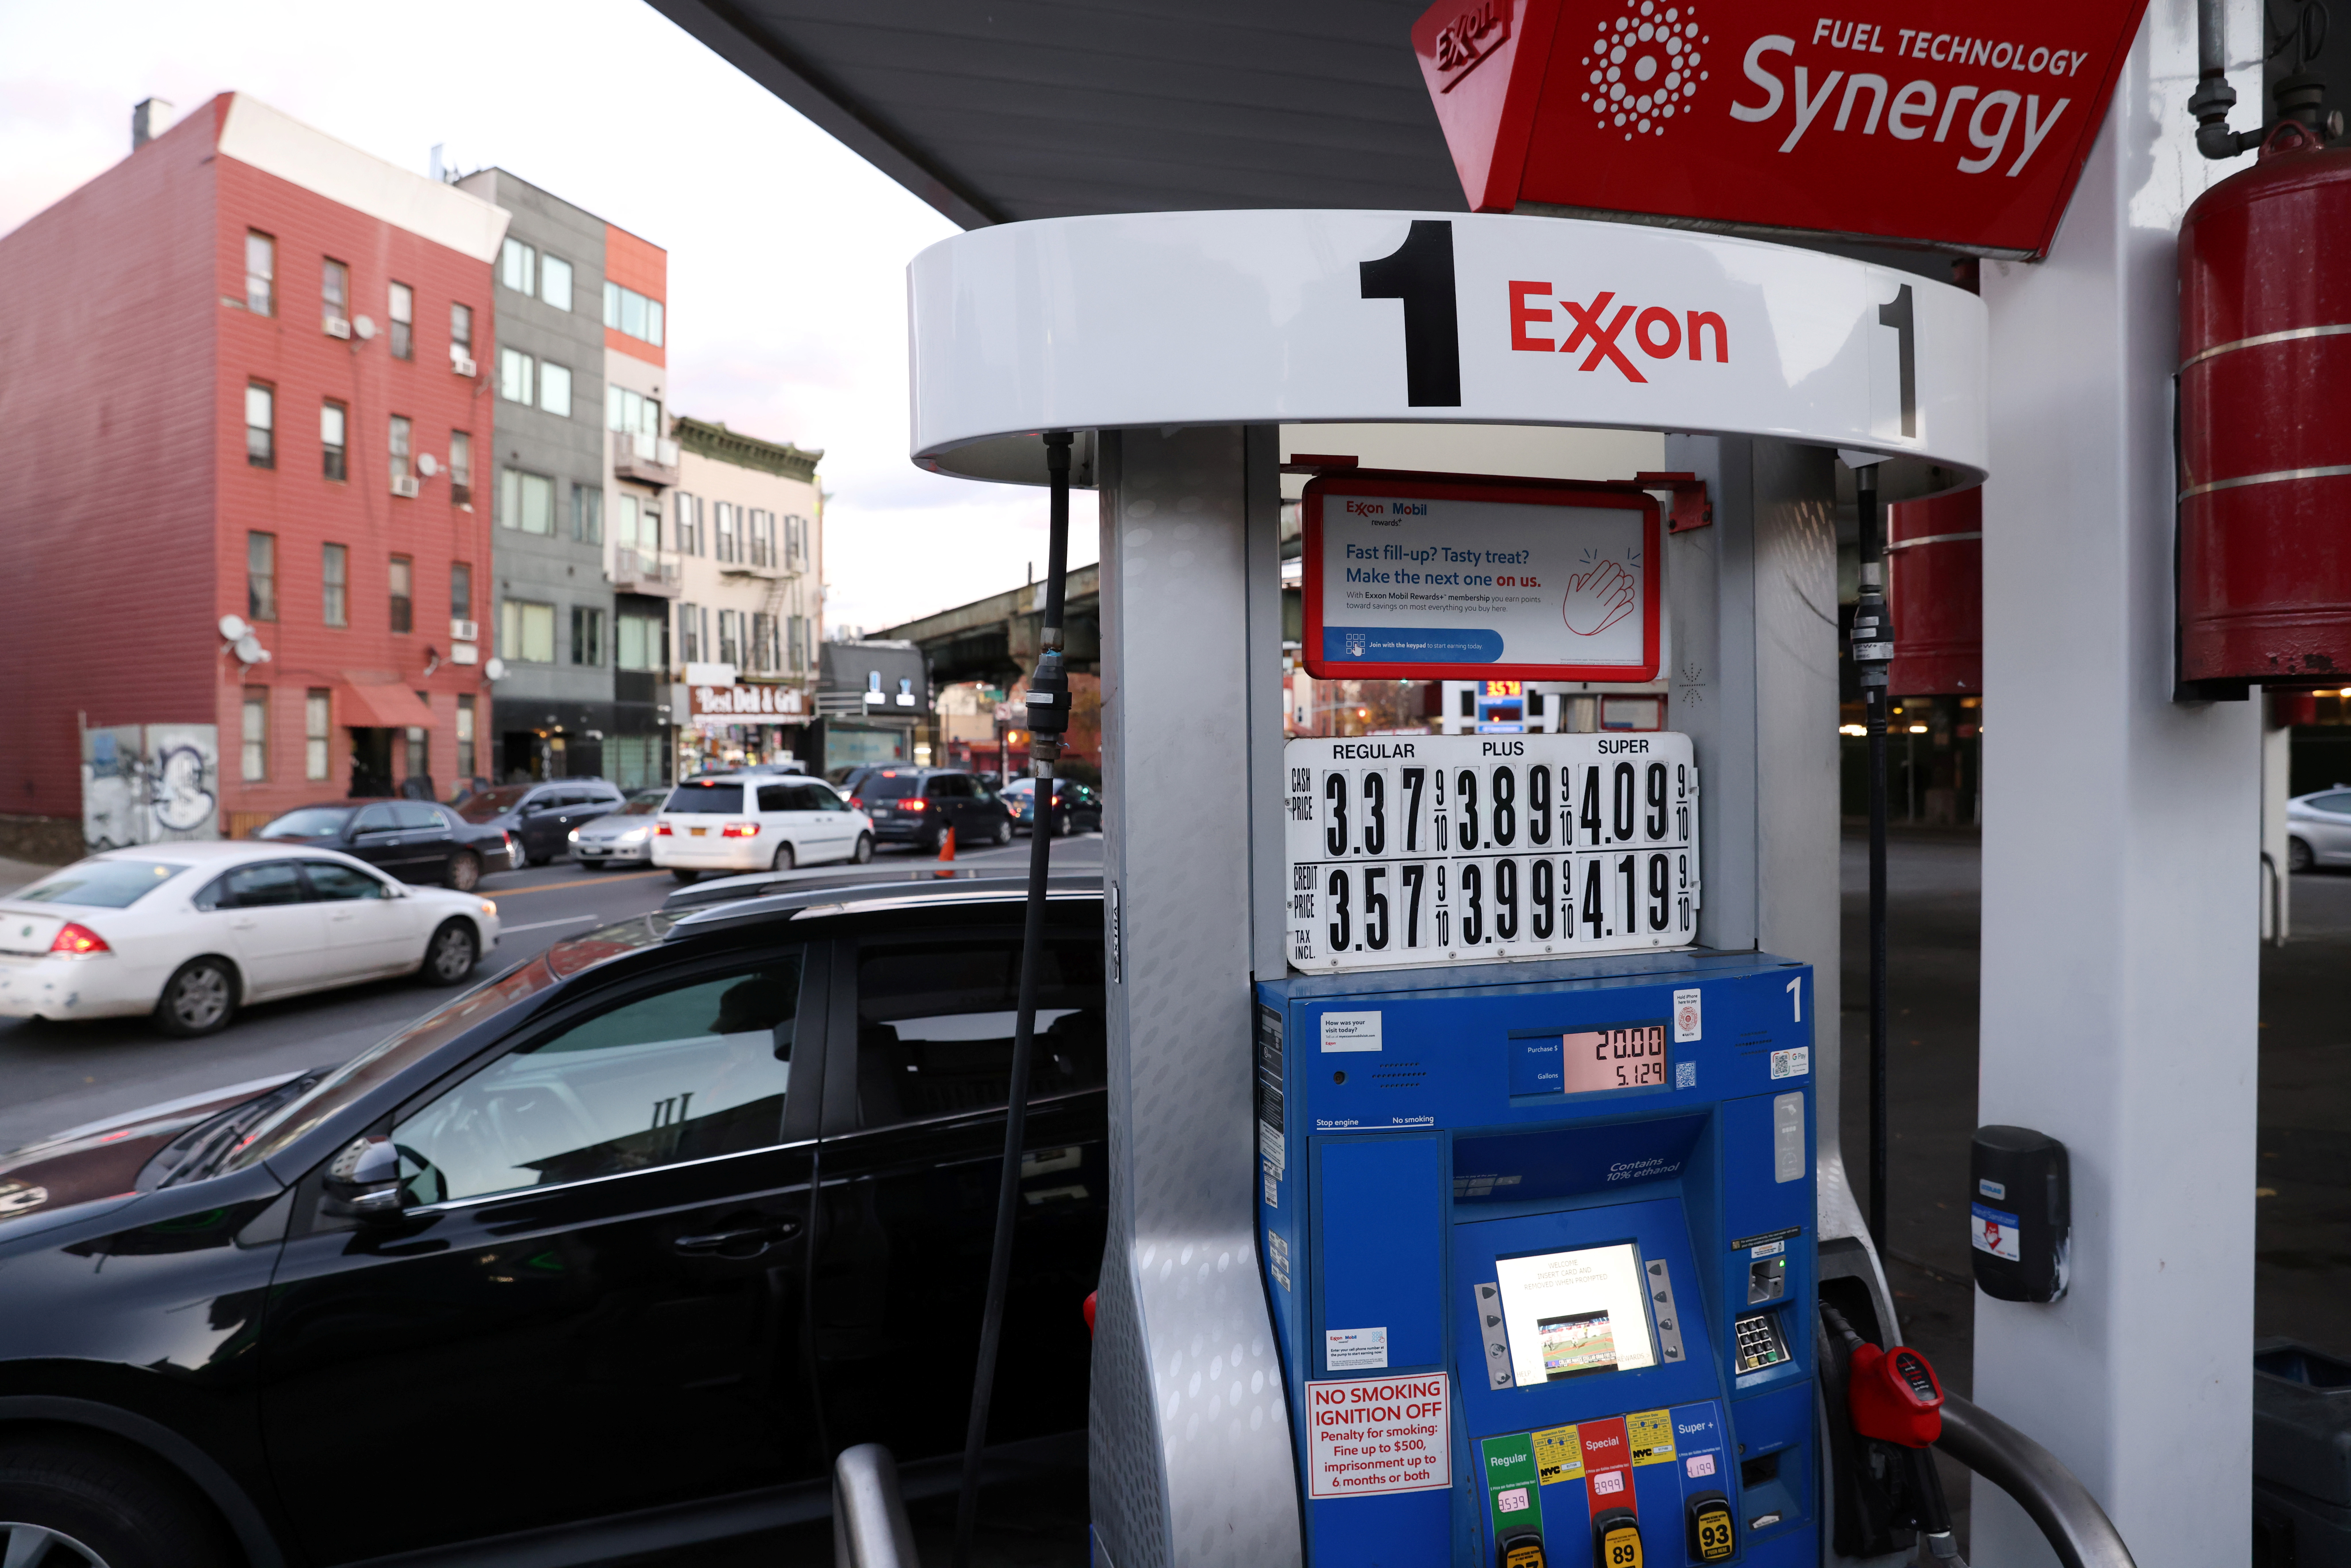 Pétrole en baisse, mais essence super chère: face au hiatus, Washington accuse les majors pétrolières d'abuser